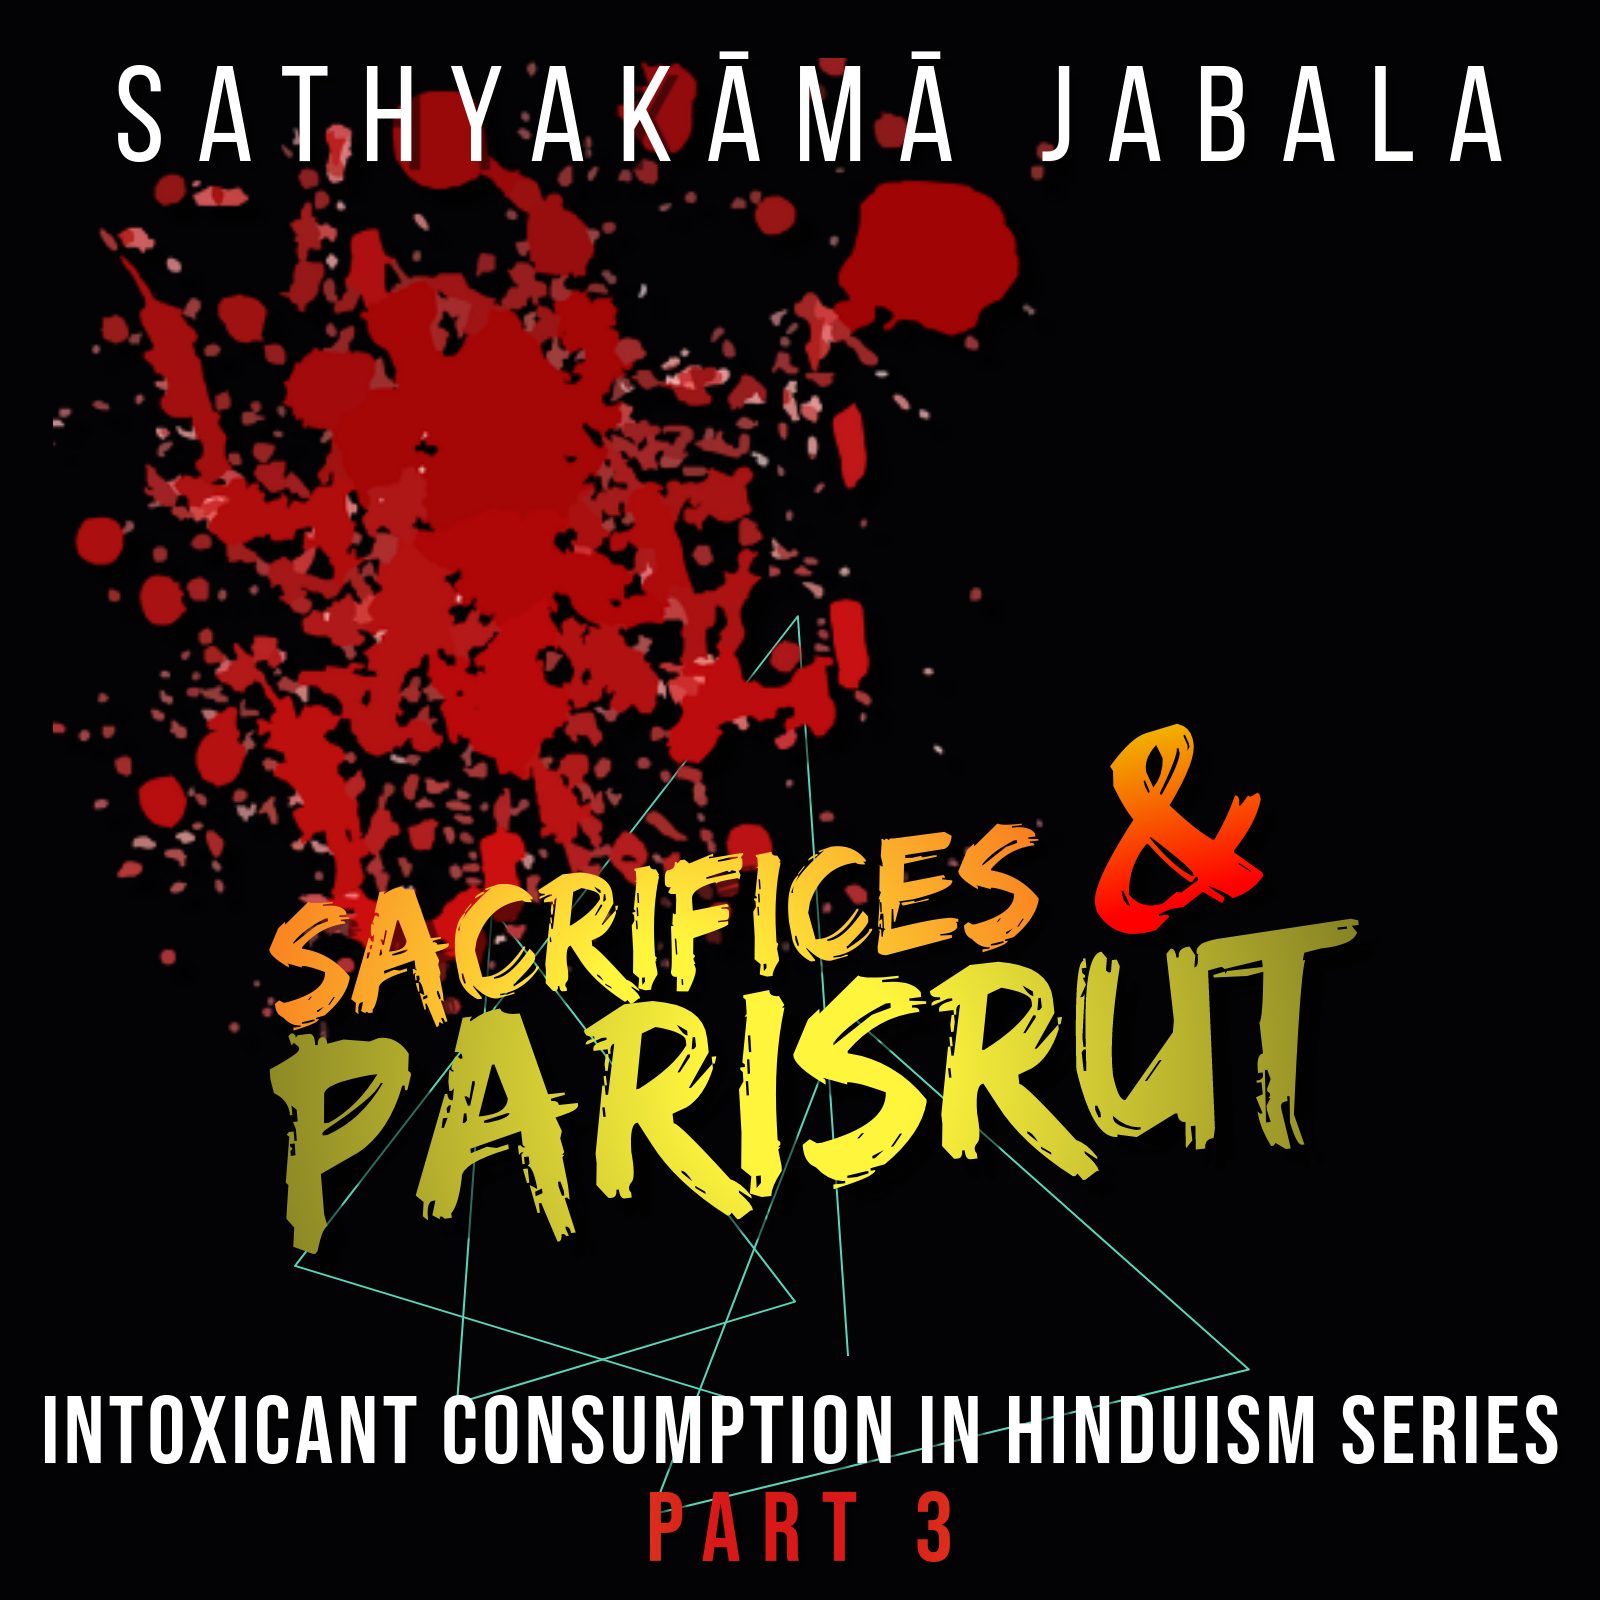 Intoxicant Consumption in Hinduism Series | Part 3: Sacrifices & Parisrut